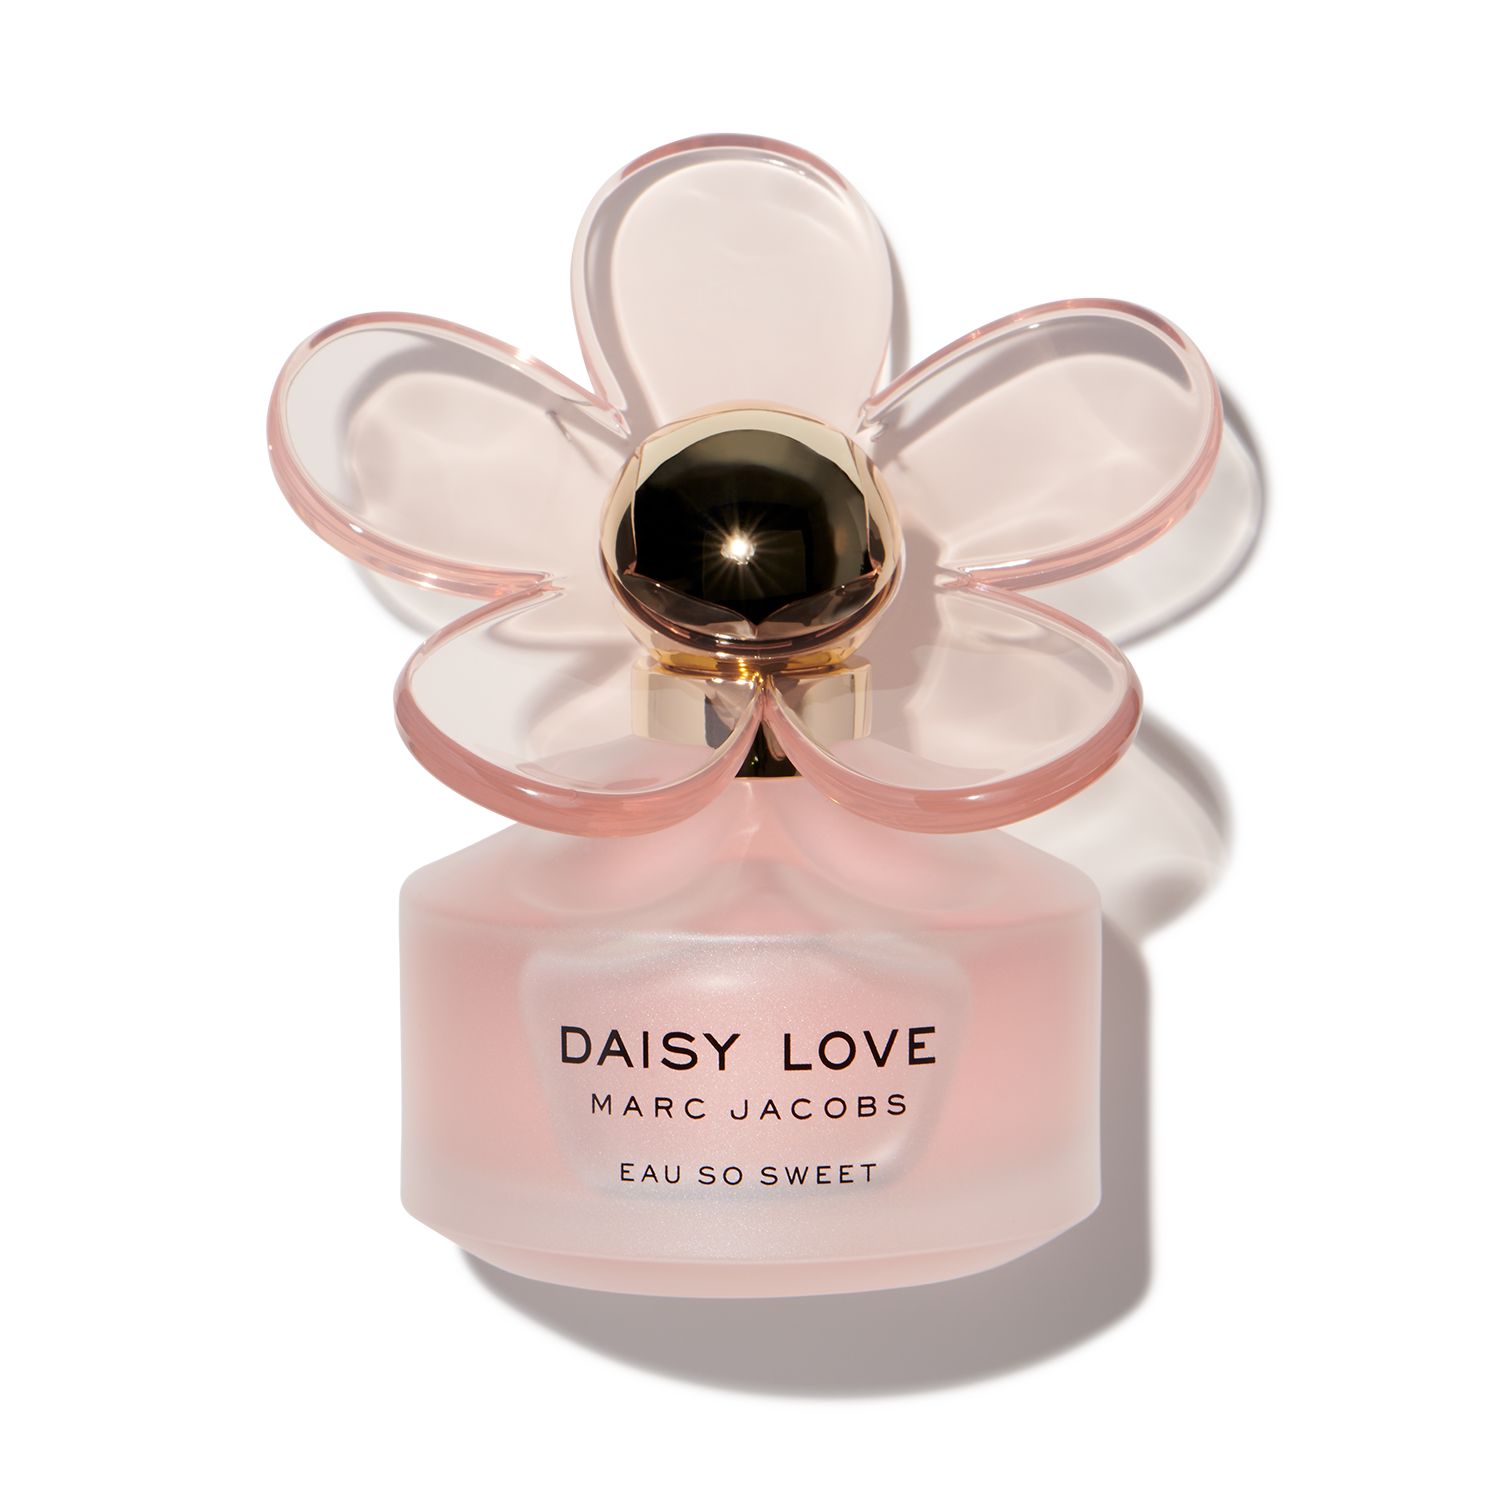 Marc Jacobs Daisy for $7.95 So | Love Scentbird Sweet Eau